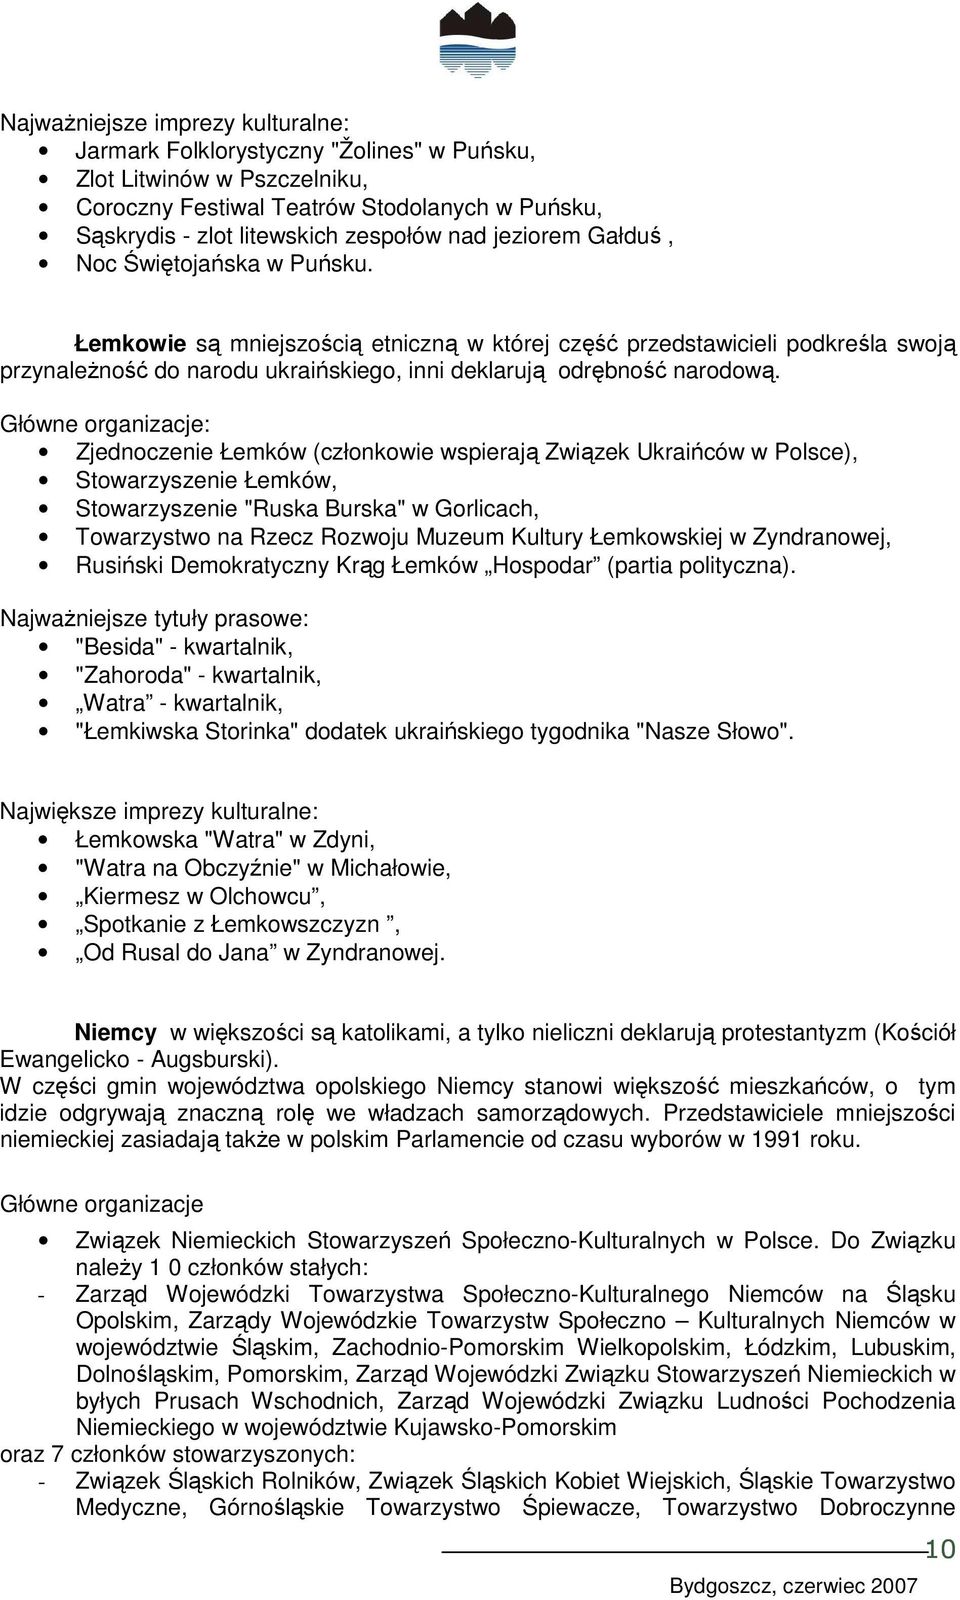 Główne organizacje: Zjednoczenie Łemków (członkowie wspierają Związek Ukraińców w Polsce), Stowarzyszenie Łemków, Stowarzyszenie "Ruska Burska" w Gorlicach, Towarzystwo na Rzecz Rozwoju Muzeum